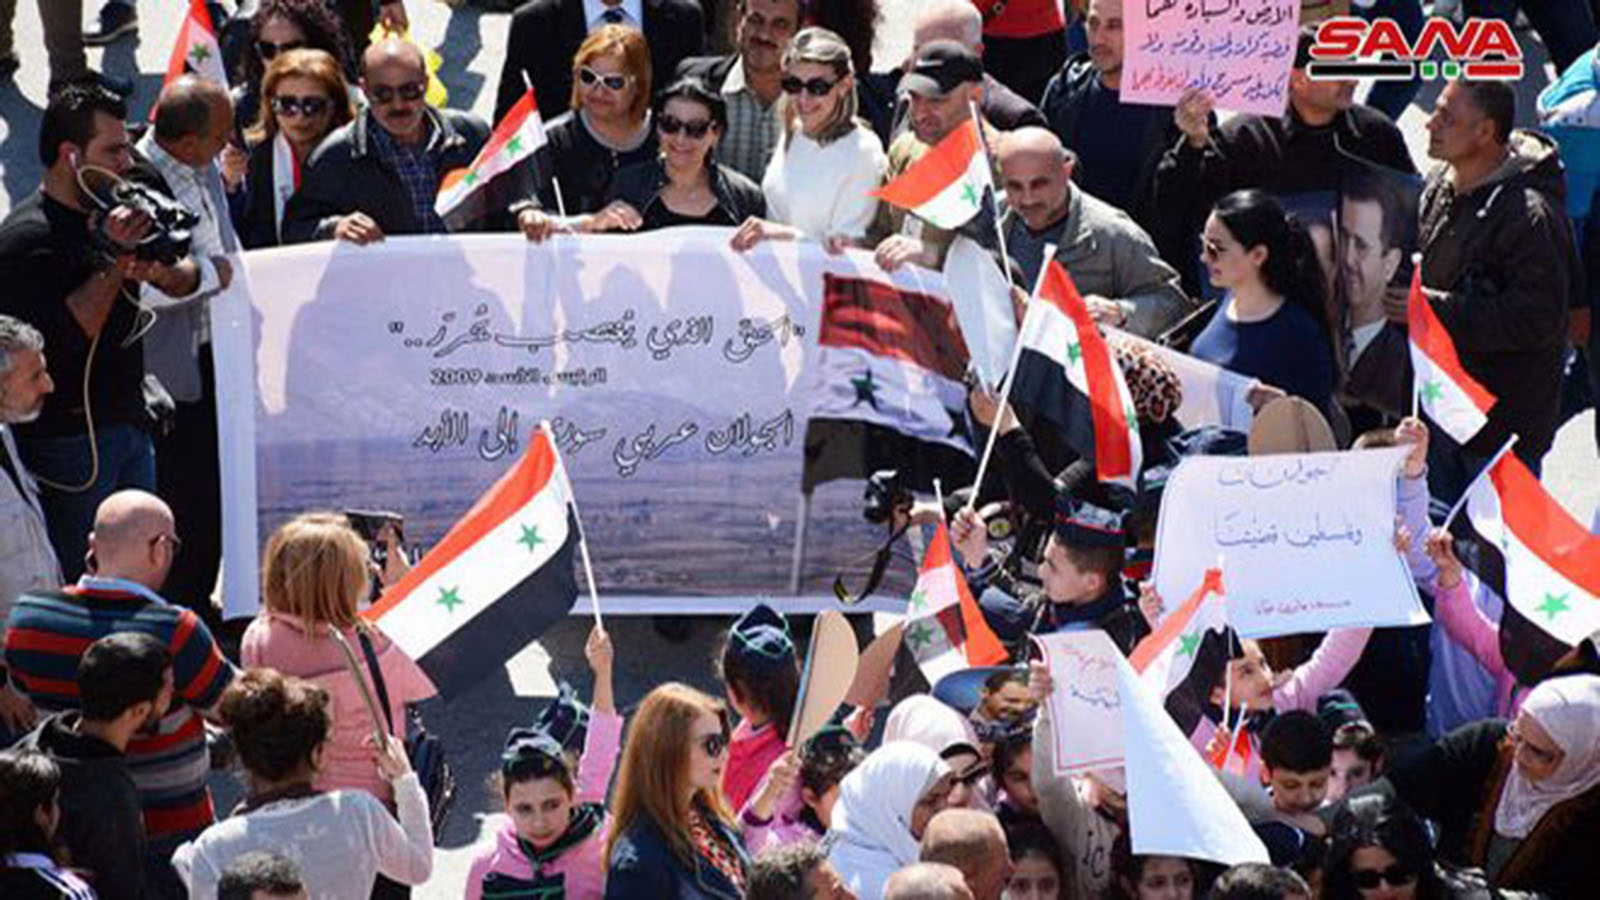 مسيرة الغضب للجولان: اللاذقية تغني "آه يا حنان"